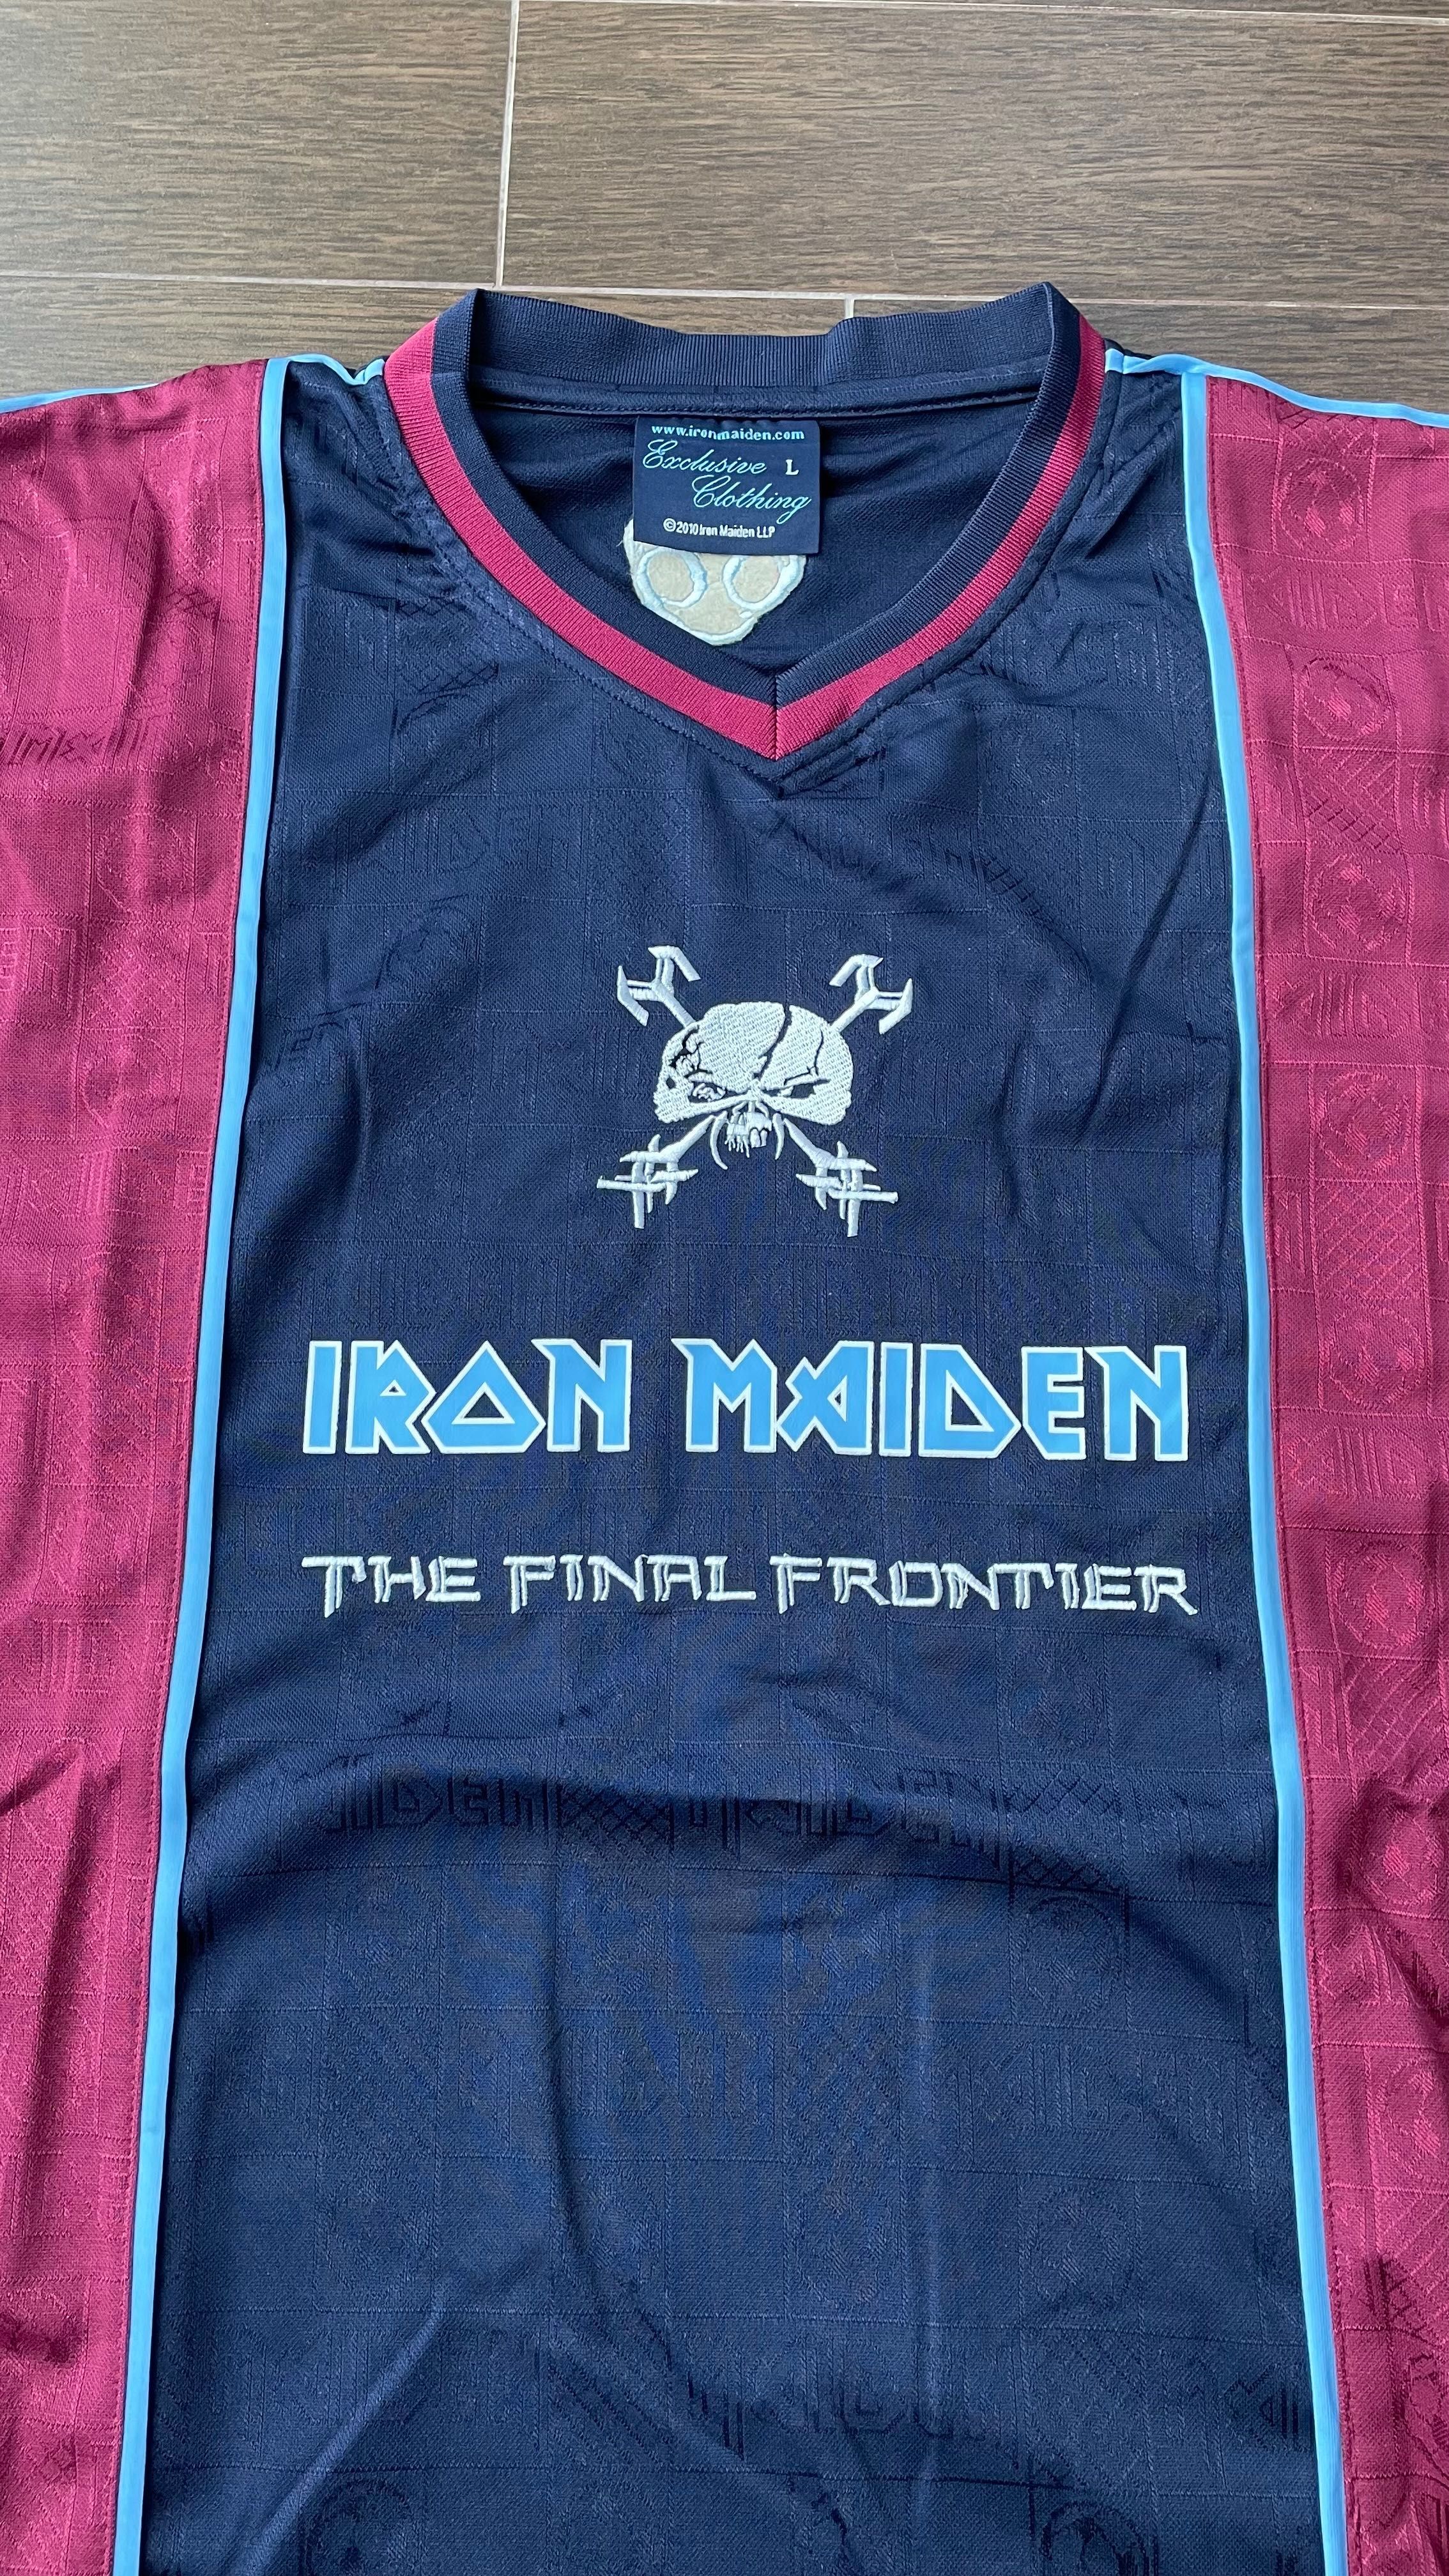 Iron Maiden - Soccer Shirt - The Final Frontier